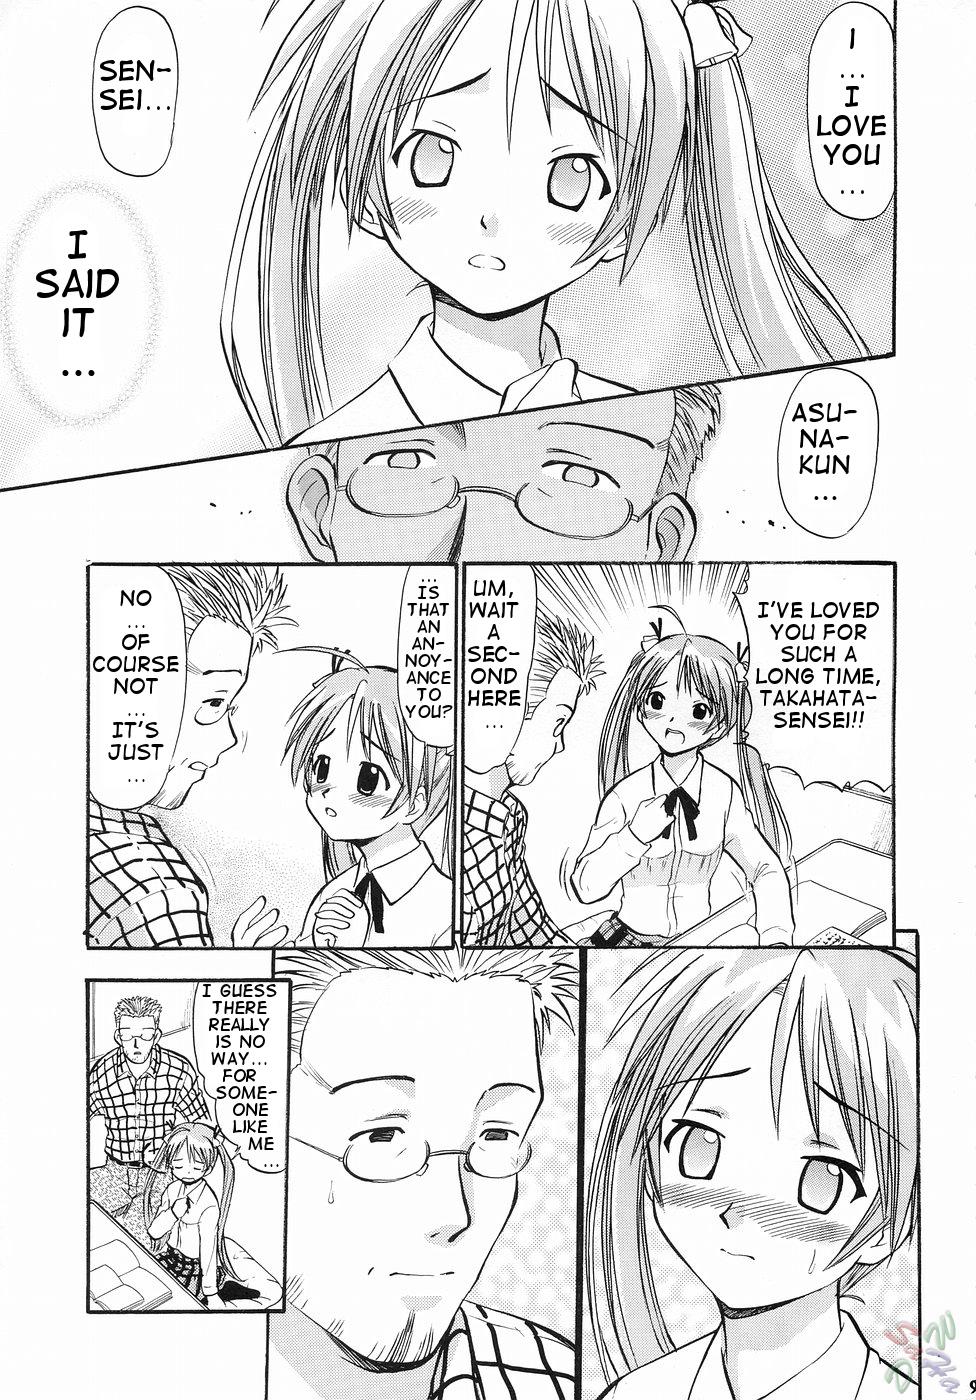 Nuru Asuna no Koisuru Heart - Mahou sensei negima Busty - Page 8